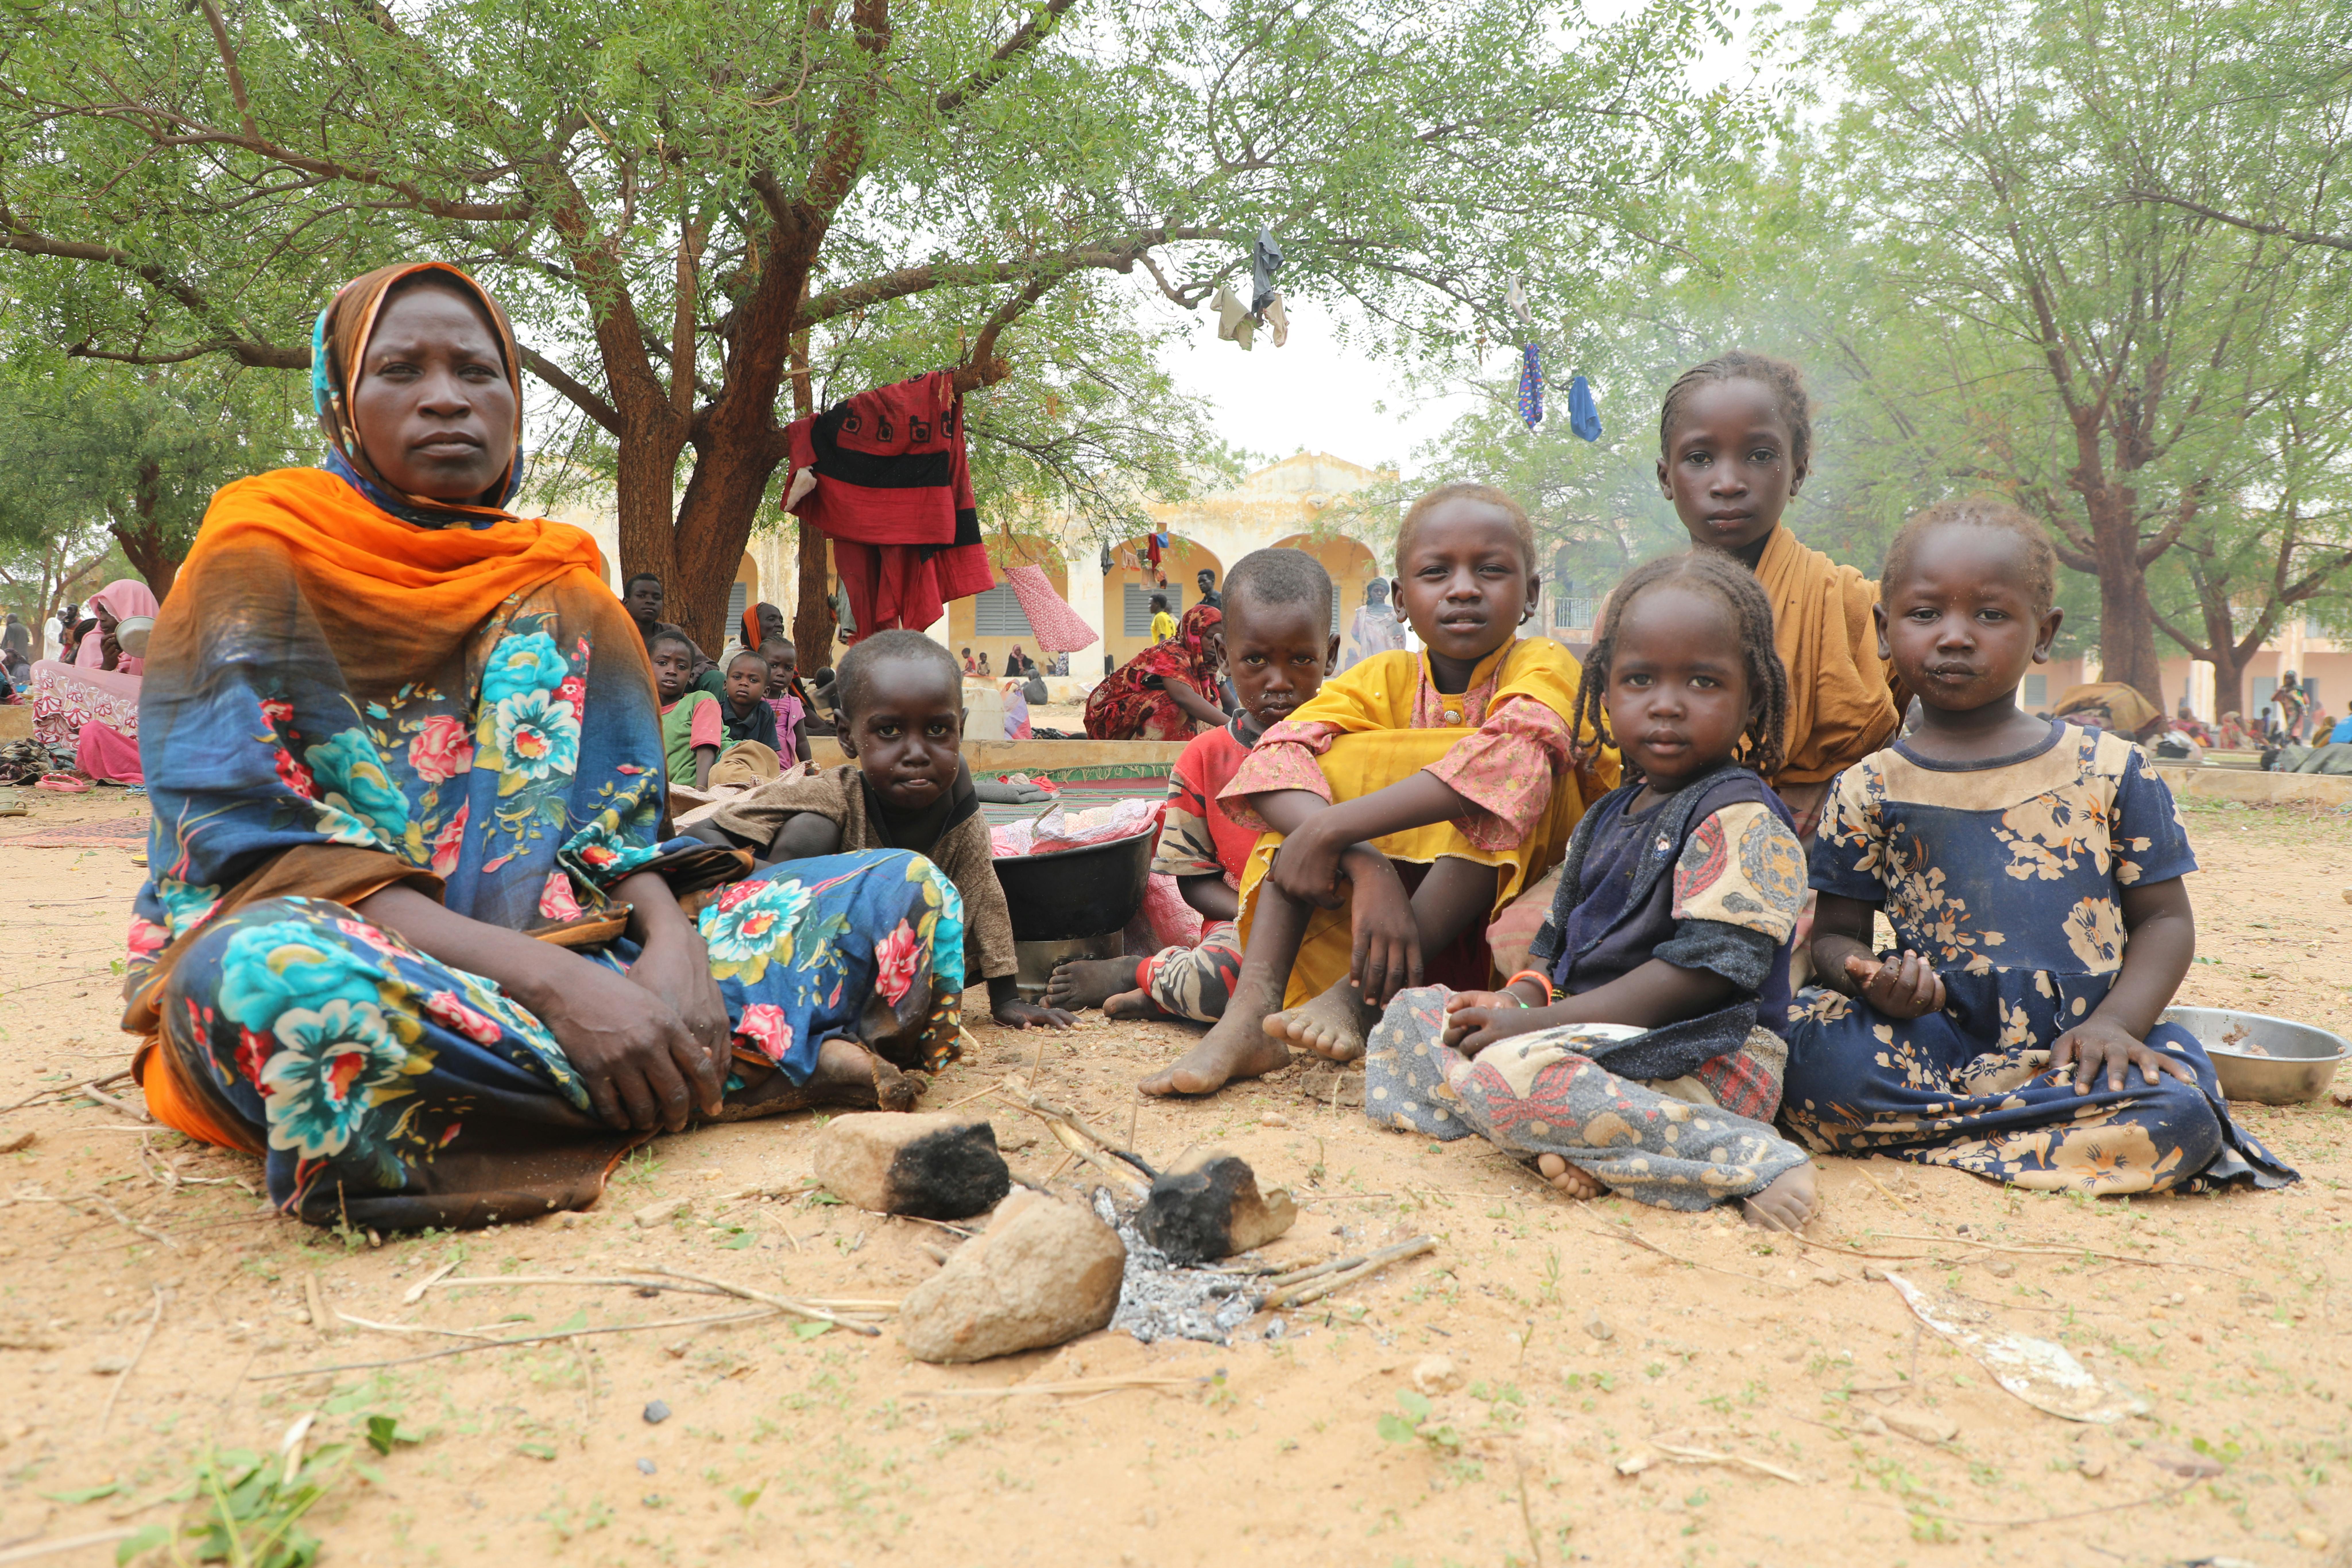 Fatna Ibrahim Daoud, 35 anni, madre di 7 bambini, sta cercando un riparo all’ombra. È fuggita dal Sudan insieme a sua figlia Isra, di 7 anni: durante l’attacco, ha perso traccia degli altri 6 figli. Mentre era in viaggio verso il confine, ha trovato altri 5 bambini che avevano smarrito i loro familiari e li ha portati con sé.